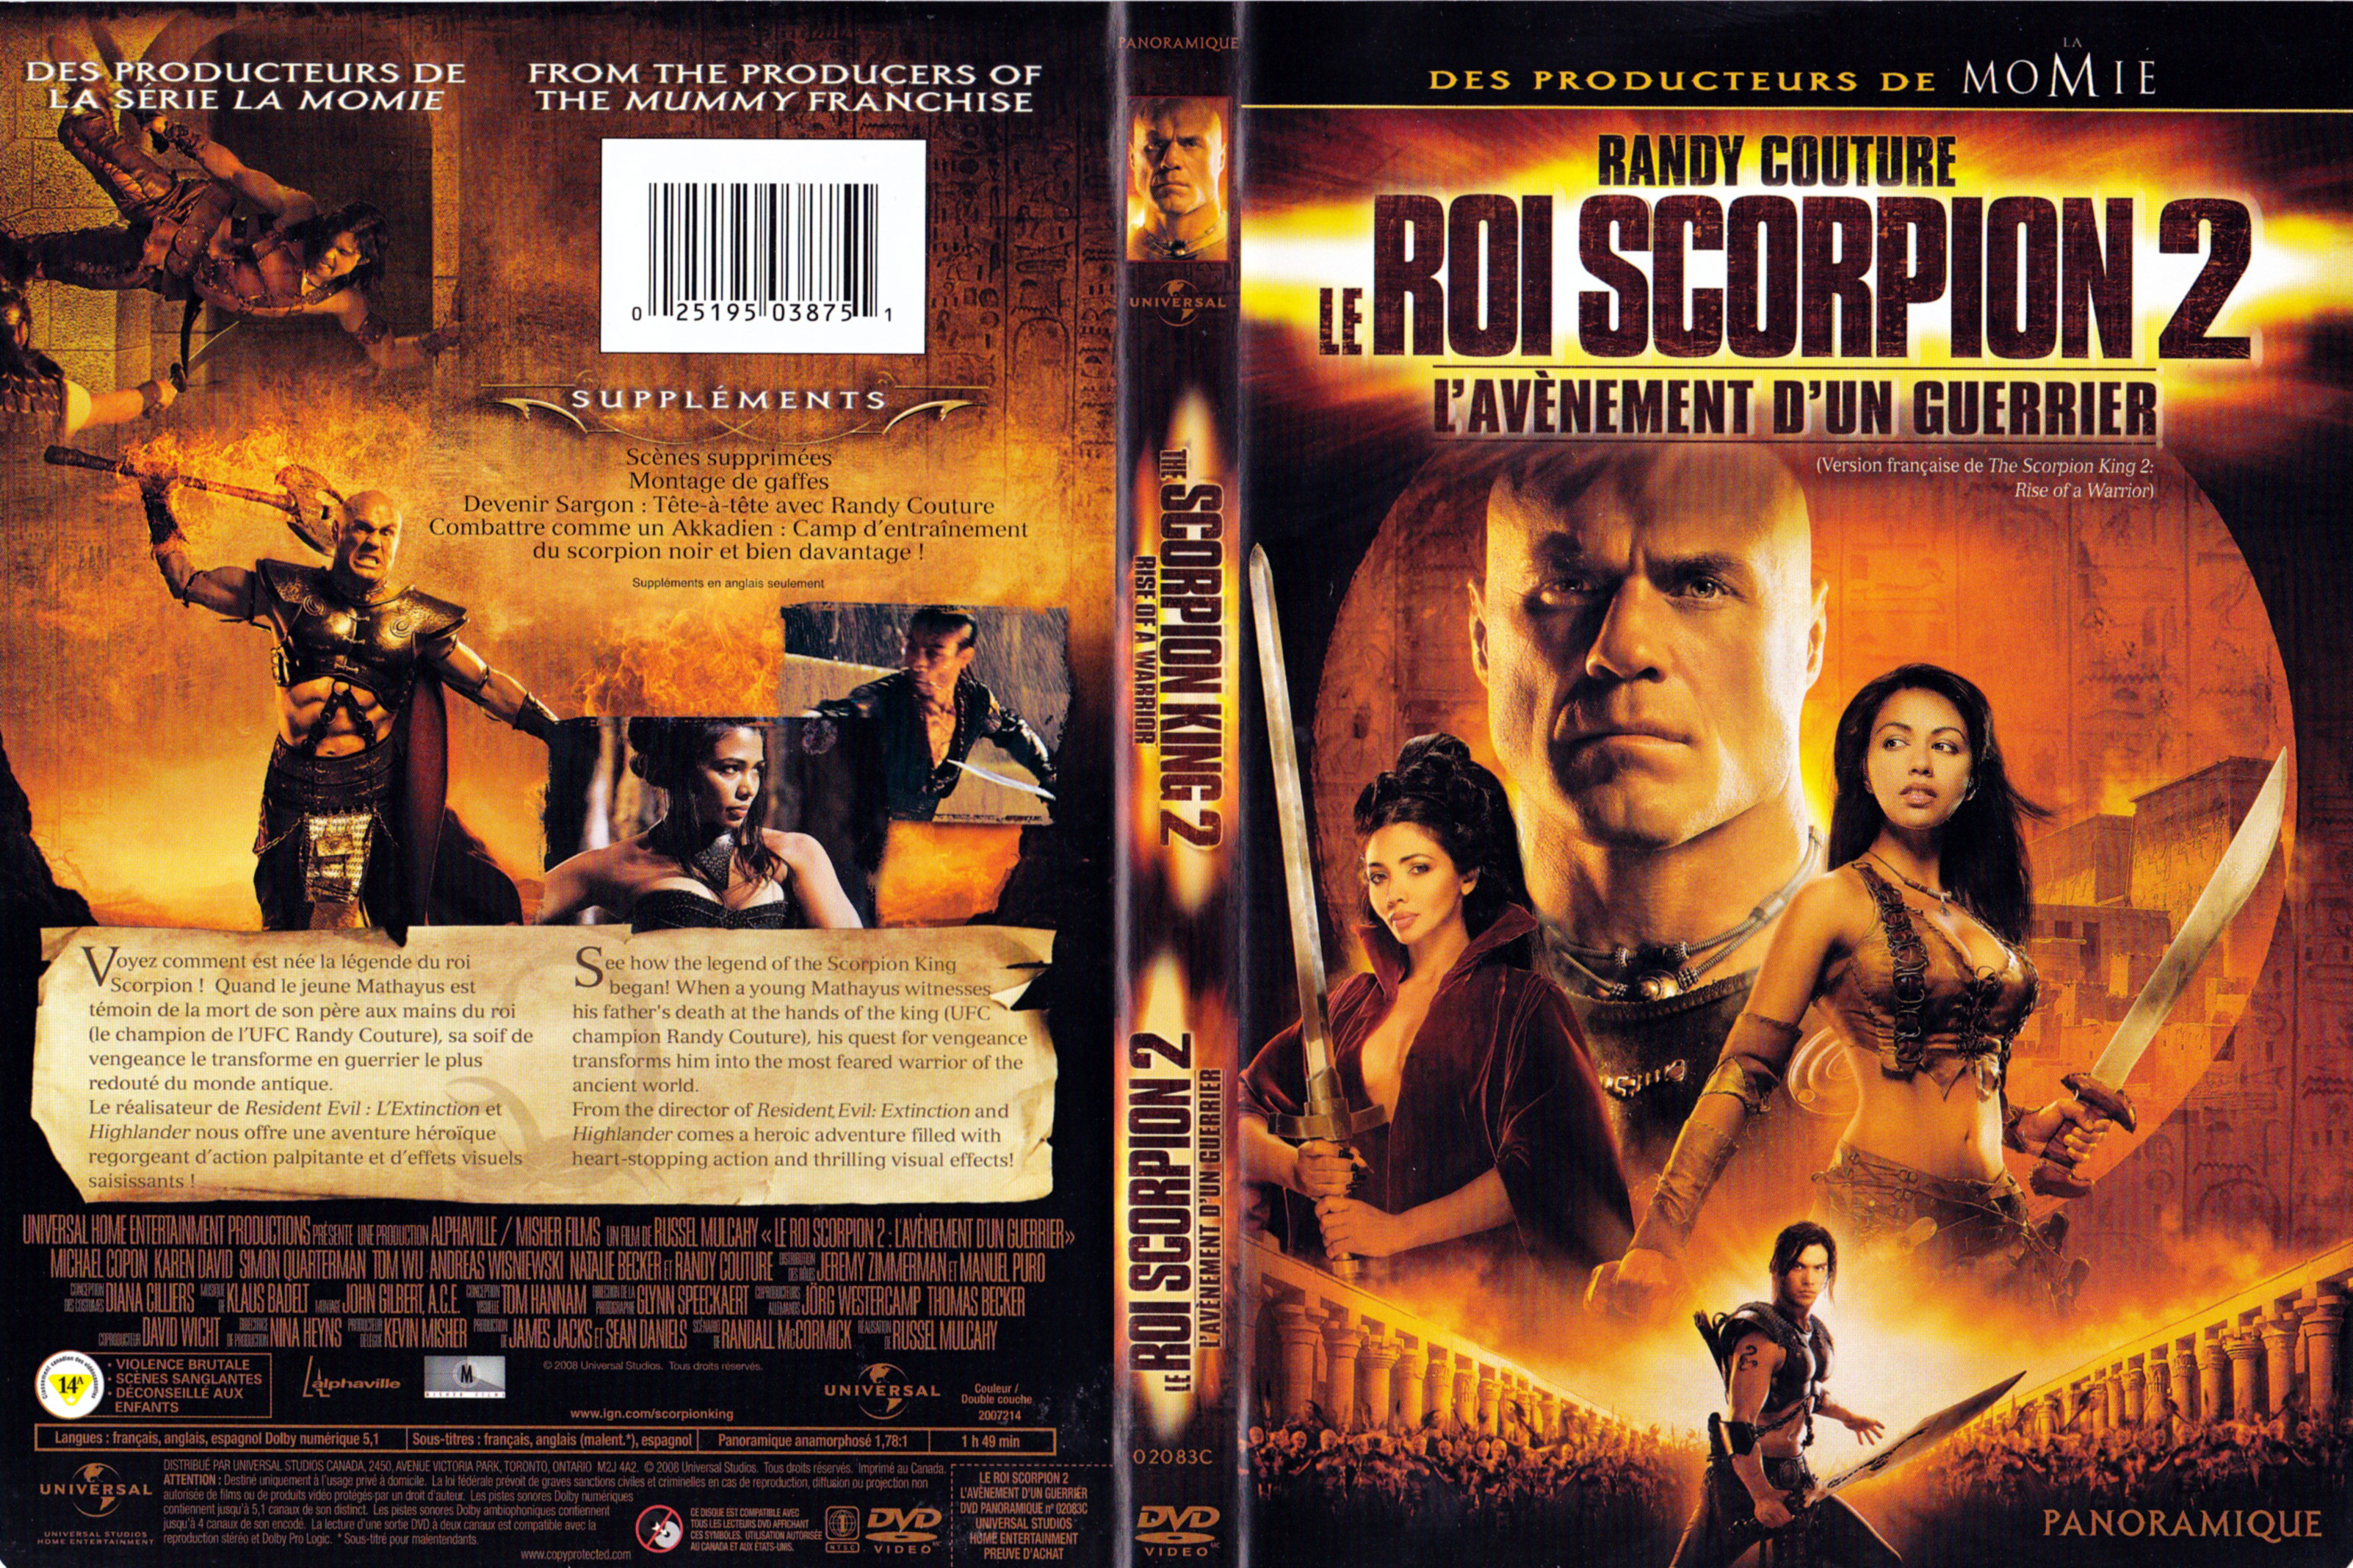 Jaquette DVD Le roi scorpion 2 - L